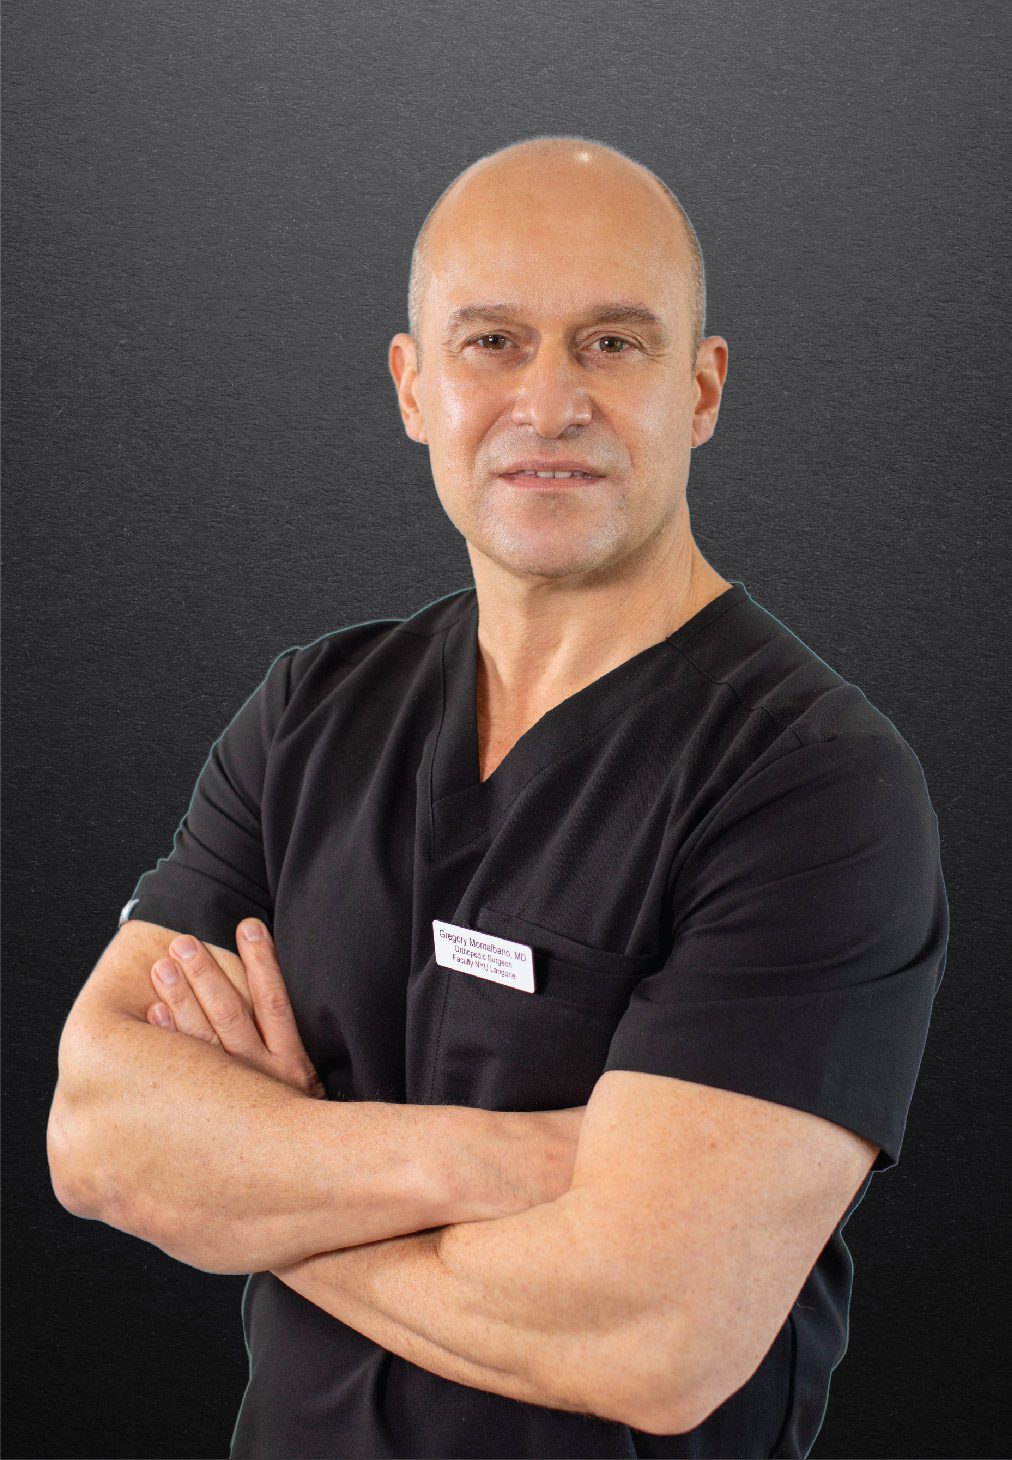 Orthopedic surgeon Gregory Montalbano, MD